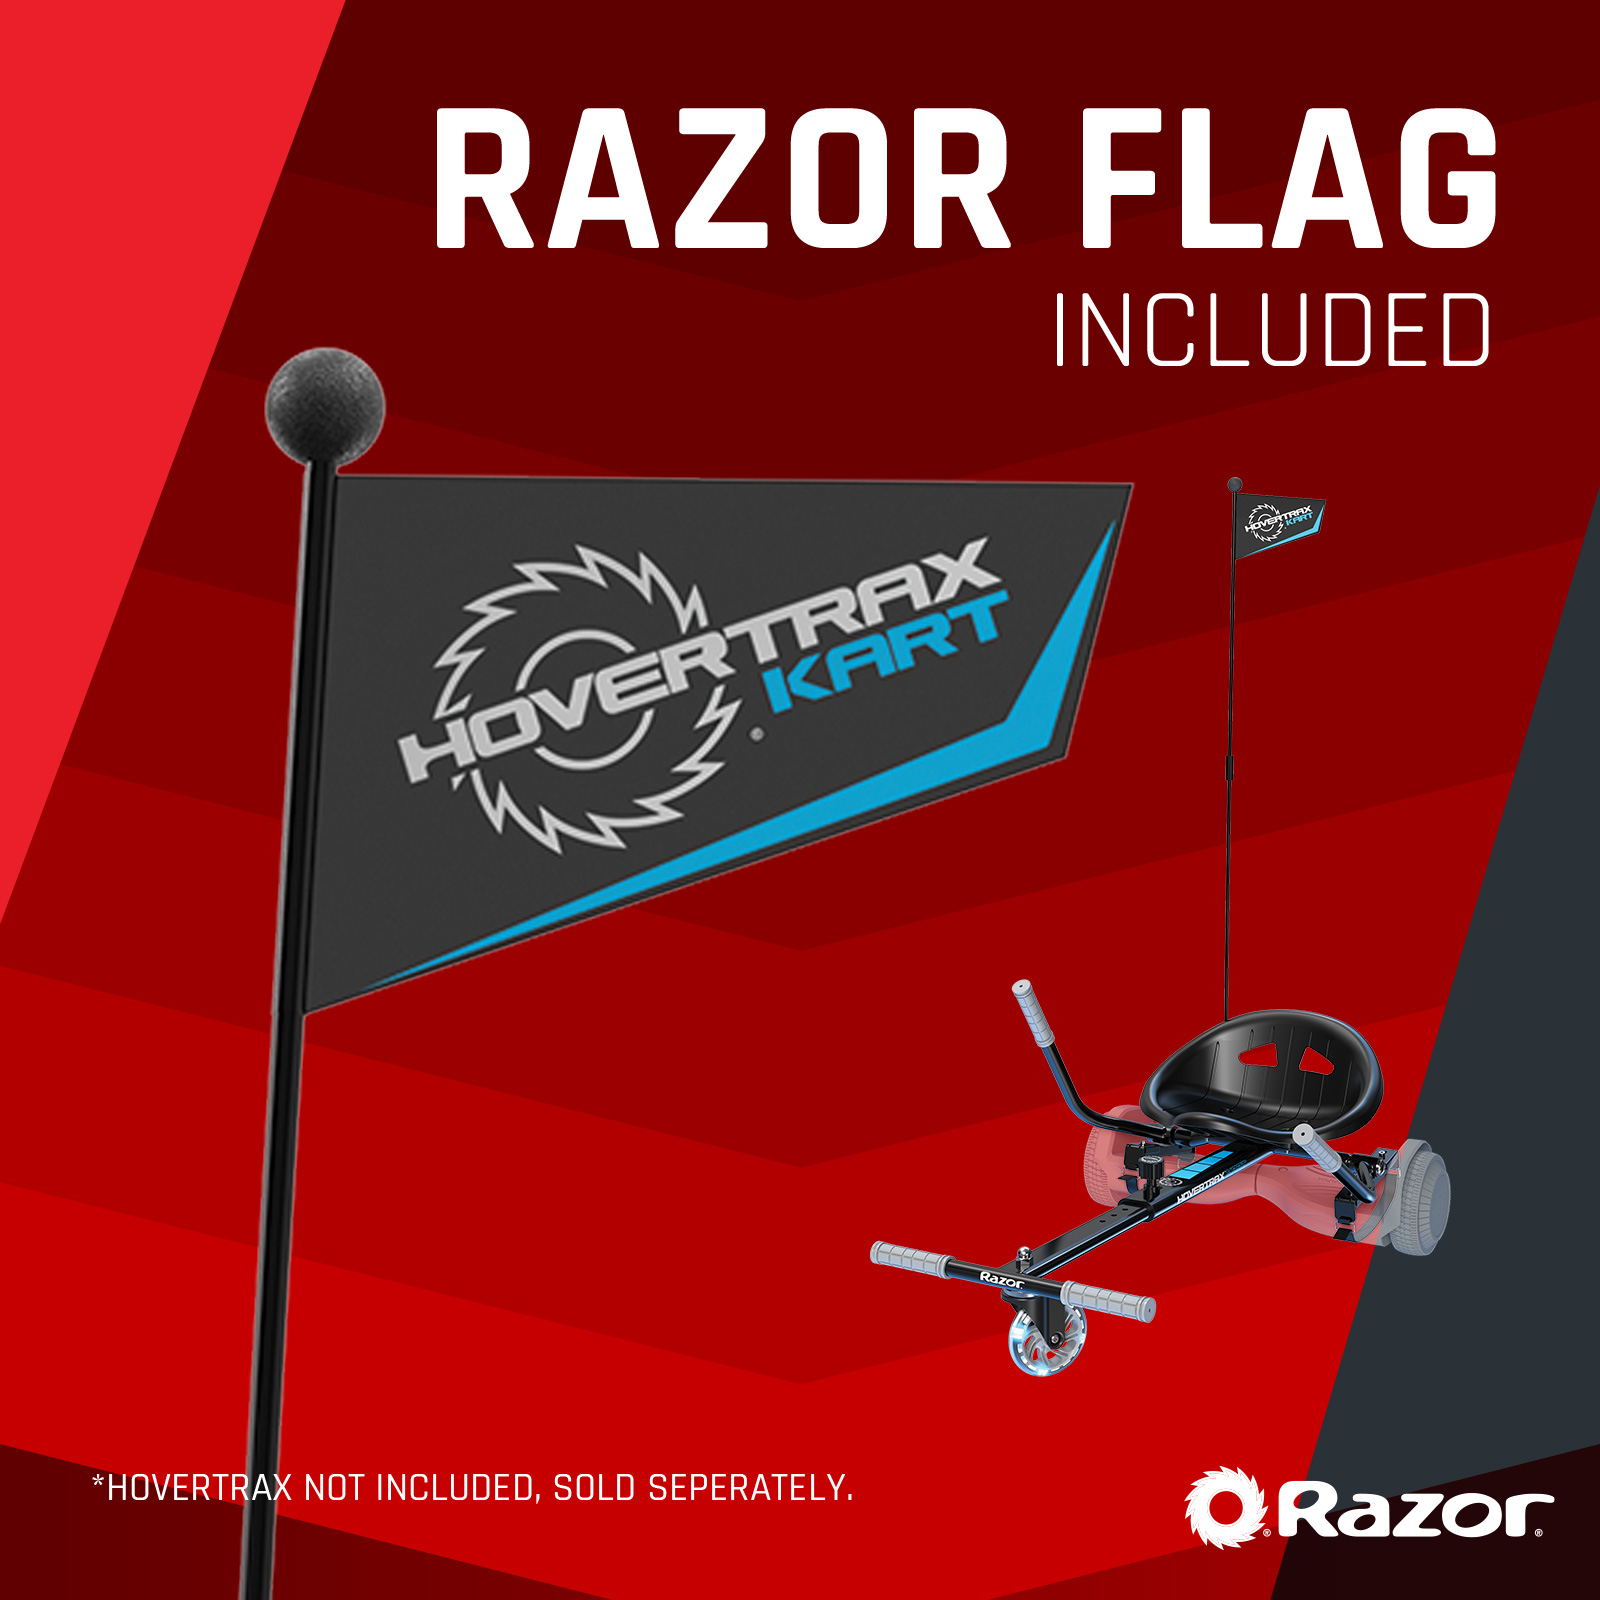 Hovertrax Kart Accessory Kit - Razor